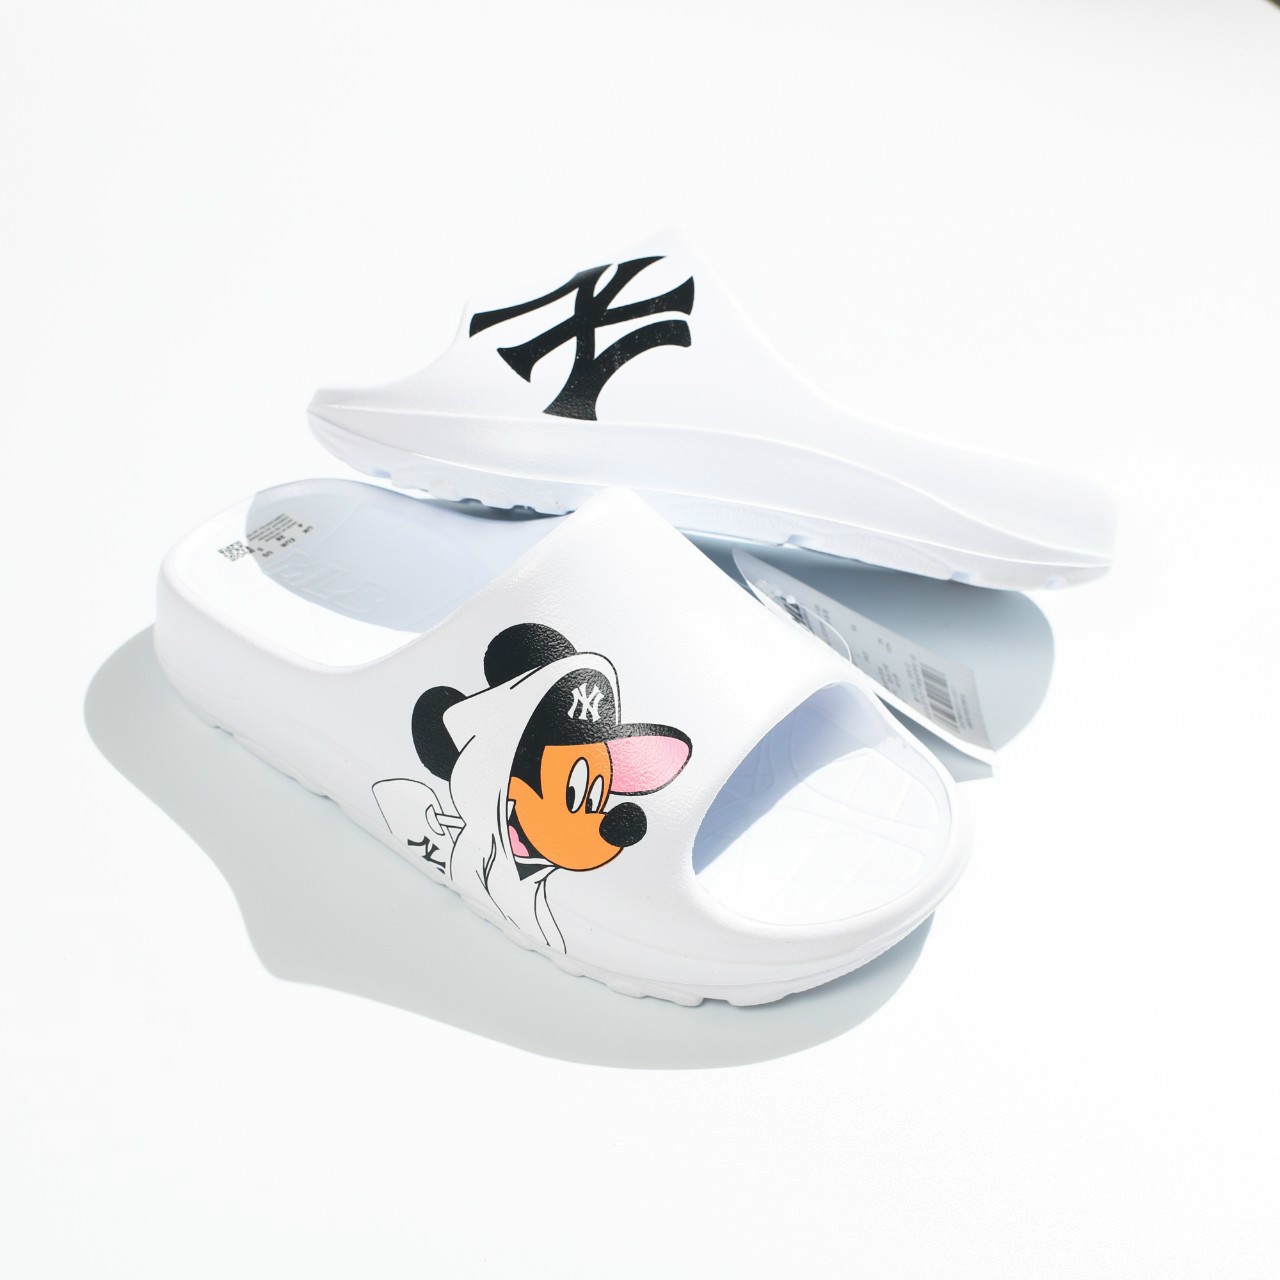 Giày Sneaker MLB Mickey đen  Số 1 Nguồn Sỉ Giày Thể Thao F1 Super Fake  Rep Rep 11